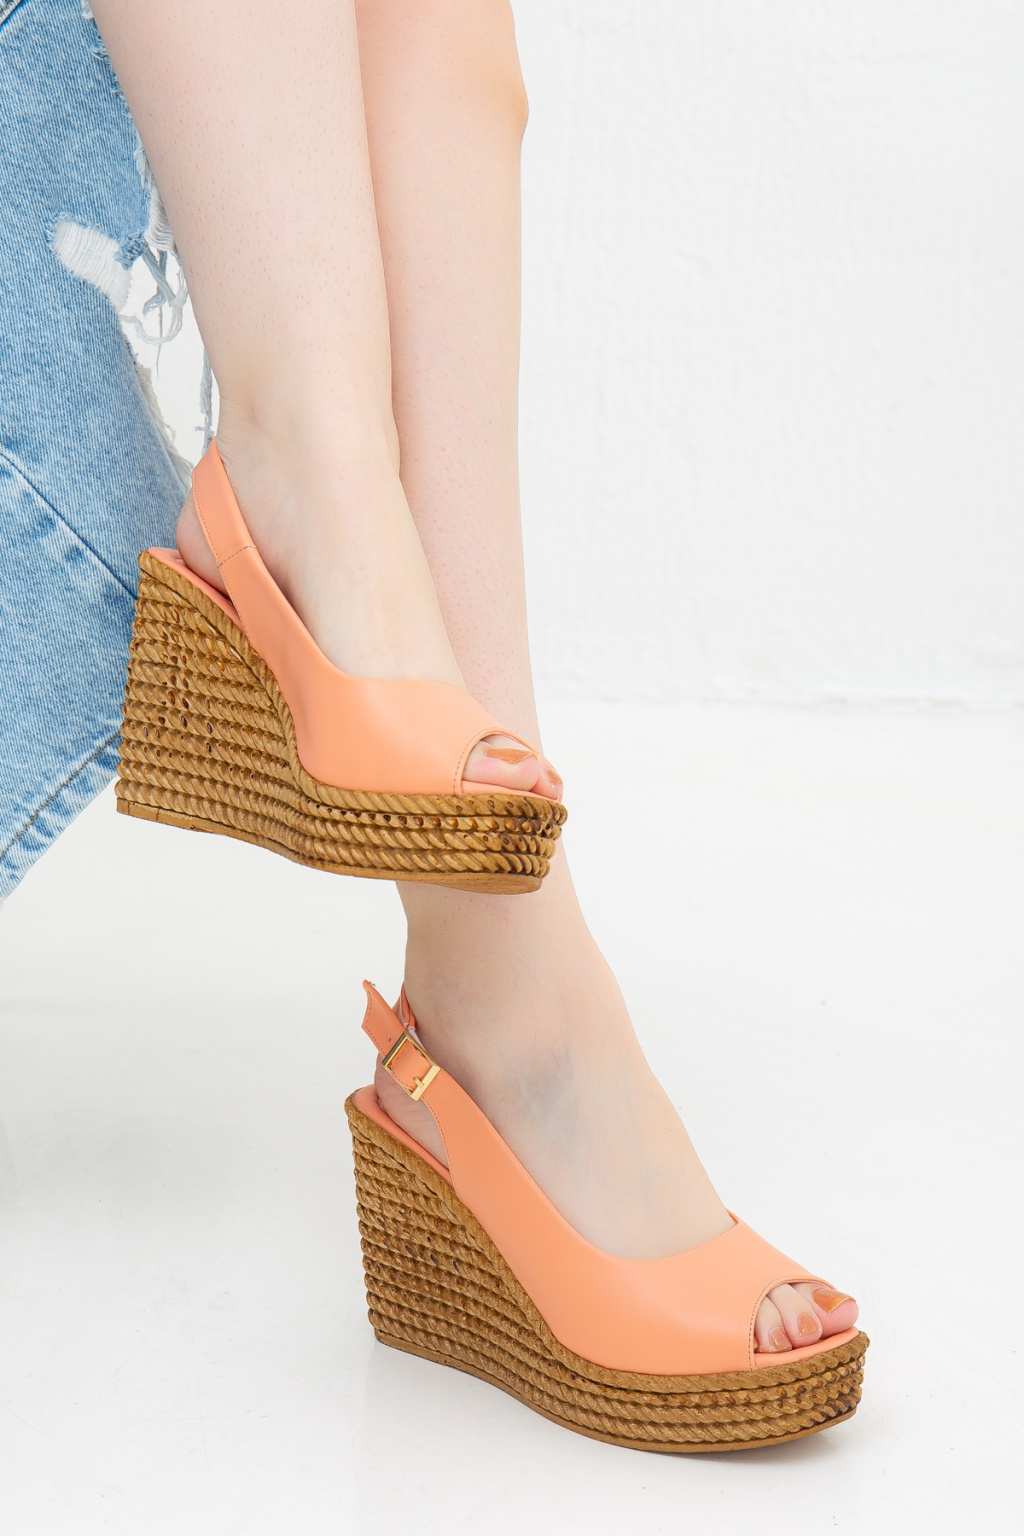 Kadın Somon Dolgu Topuklu Klasik Tarz Sandalet